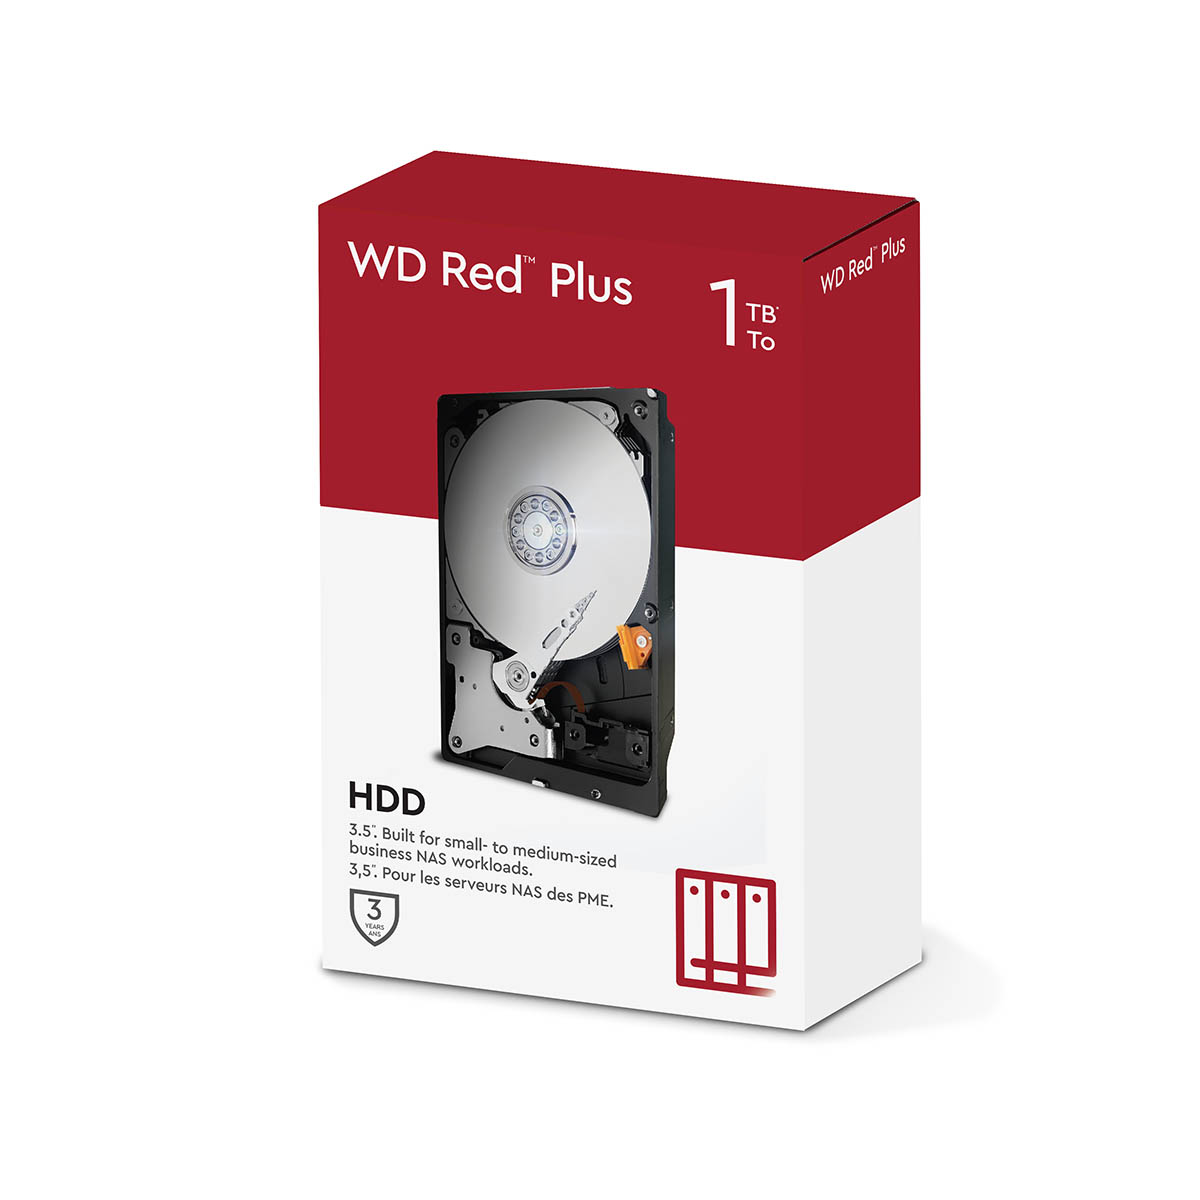 Western Digital WD101EFBX 10TB WD Red ×2